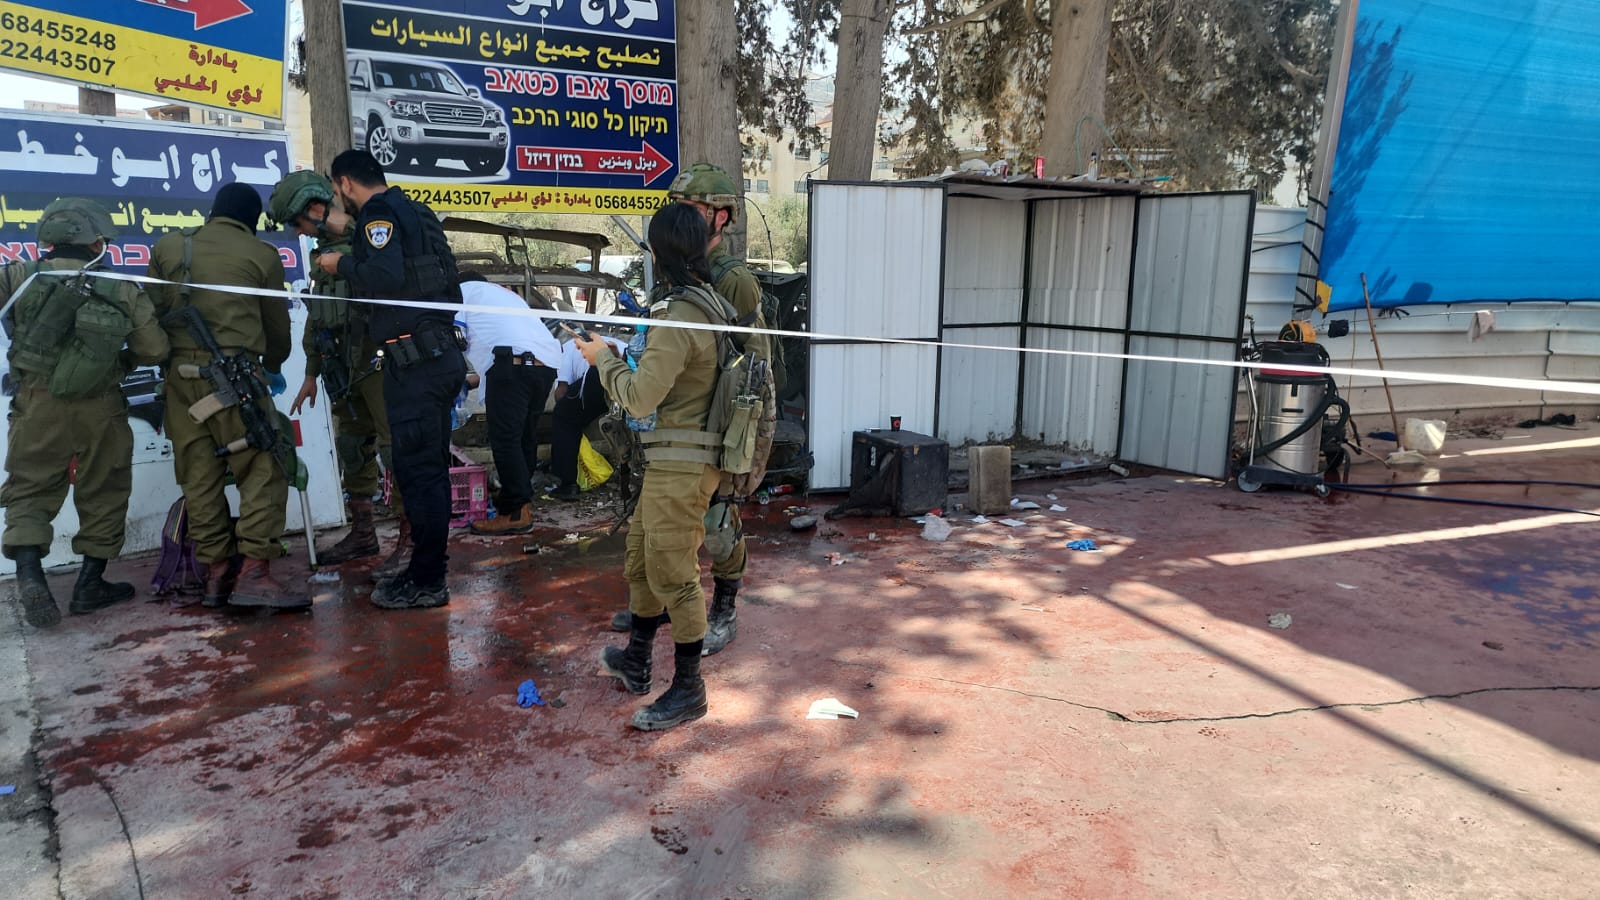 عملية إطلاق النار في حوارة أدت إلى مقتل إسرائيليان